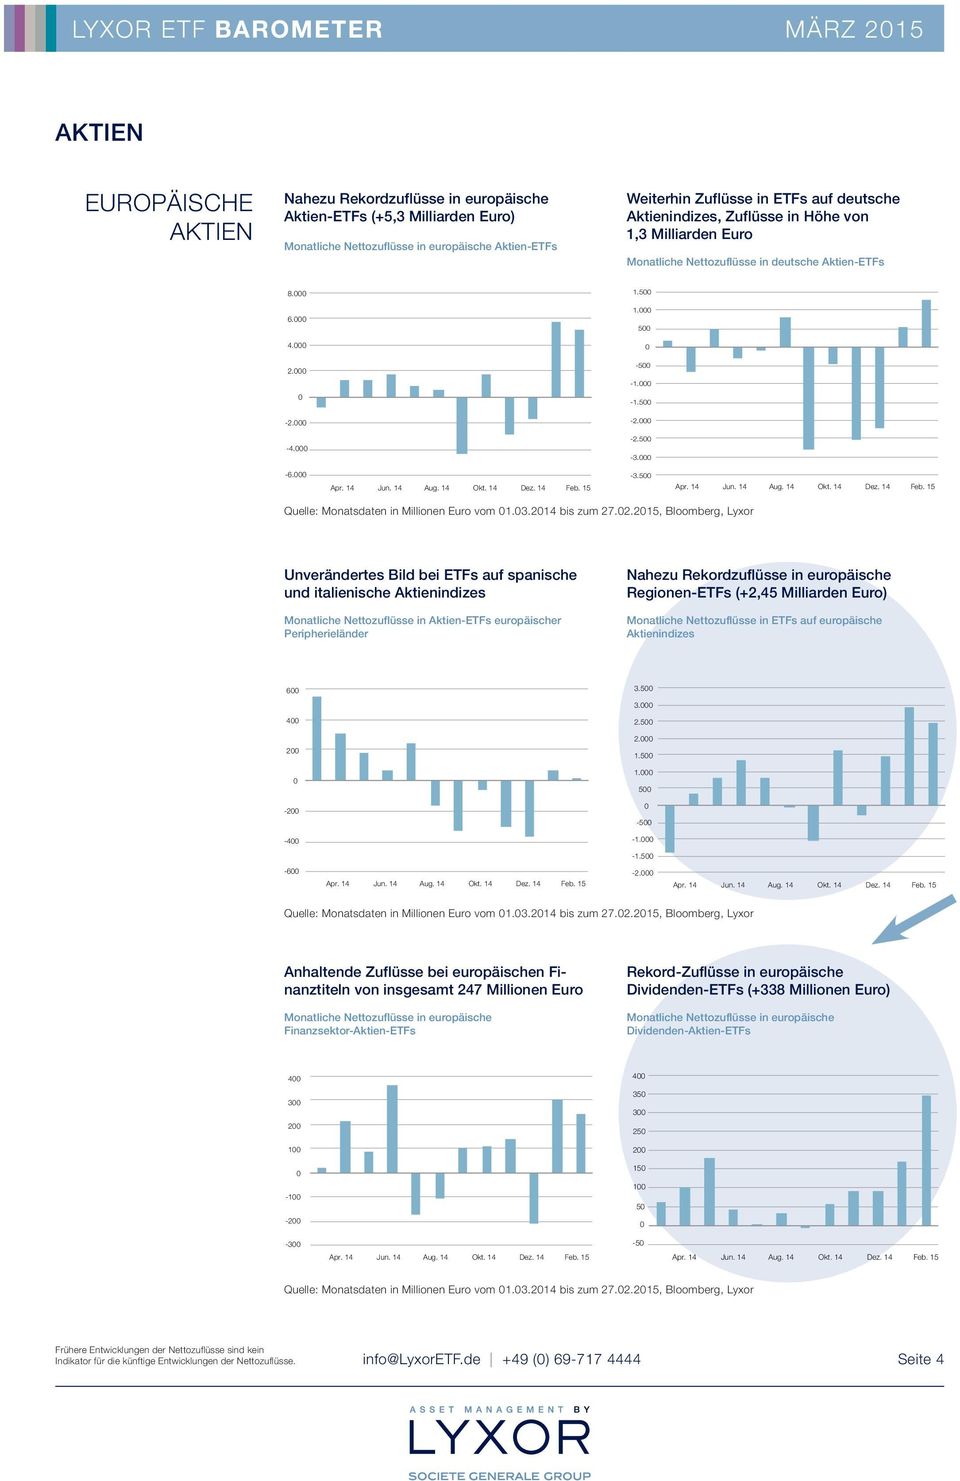 2.215, Bloomberg, Lyxor Unverändertes Bild bei ETFs auf spanische und italienische Aktienindizes Monatliche Nettozuflüsse in Aktien-ETFs europäischer Peripherieländer Nahezu Rekordzuflüsse in